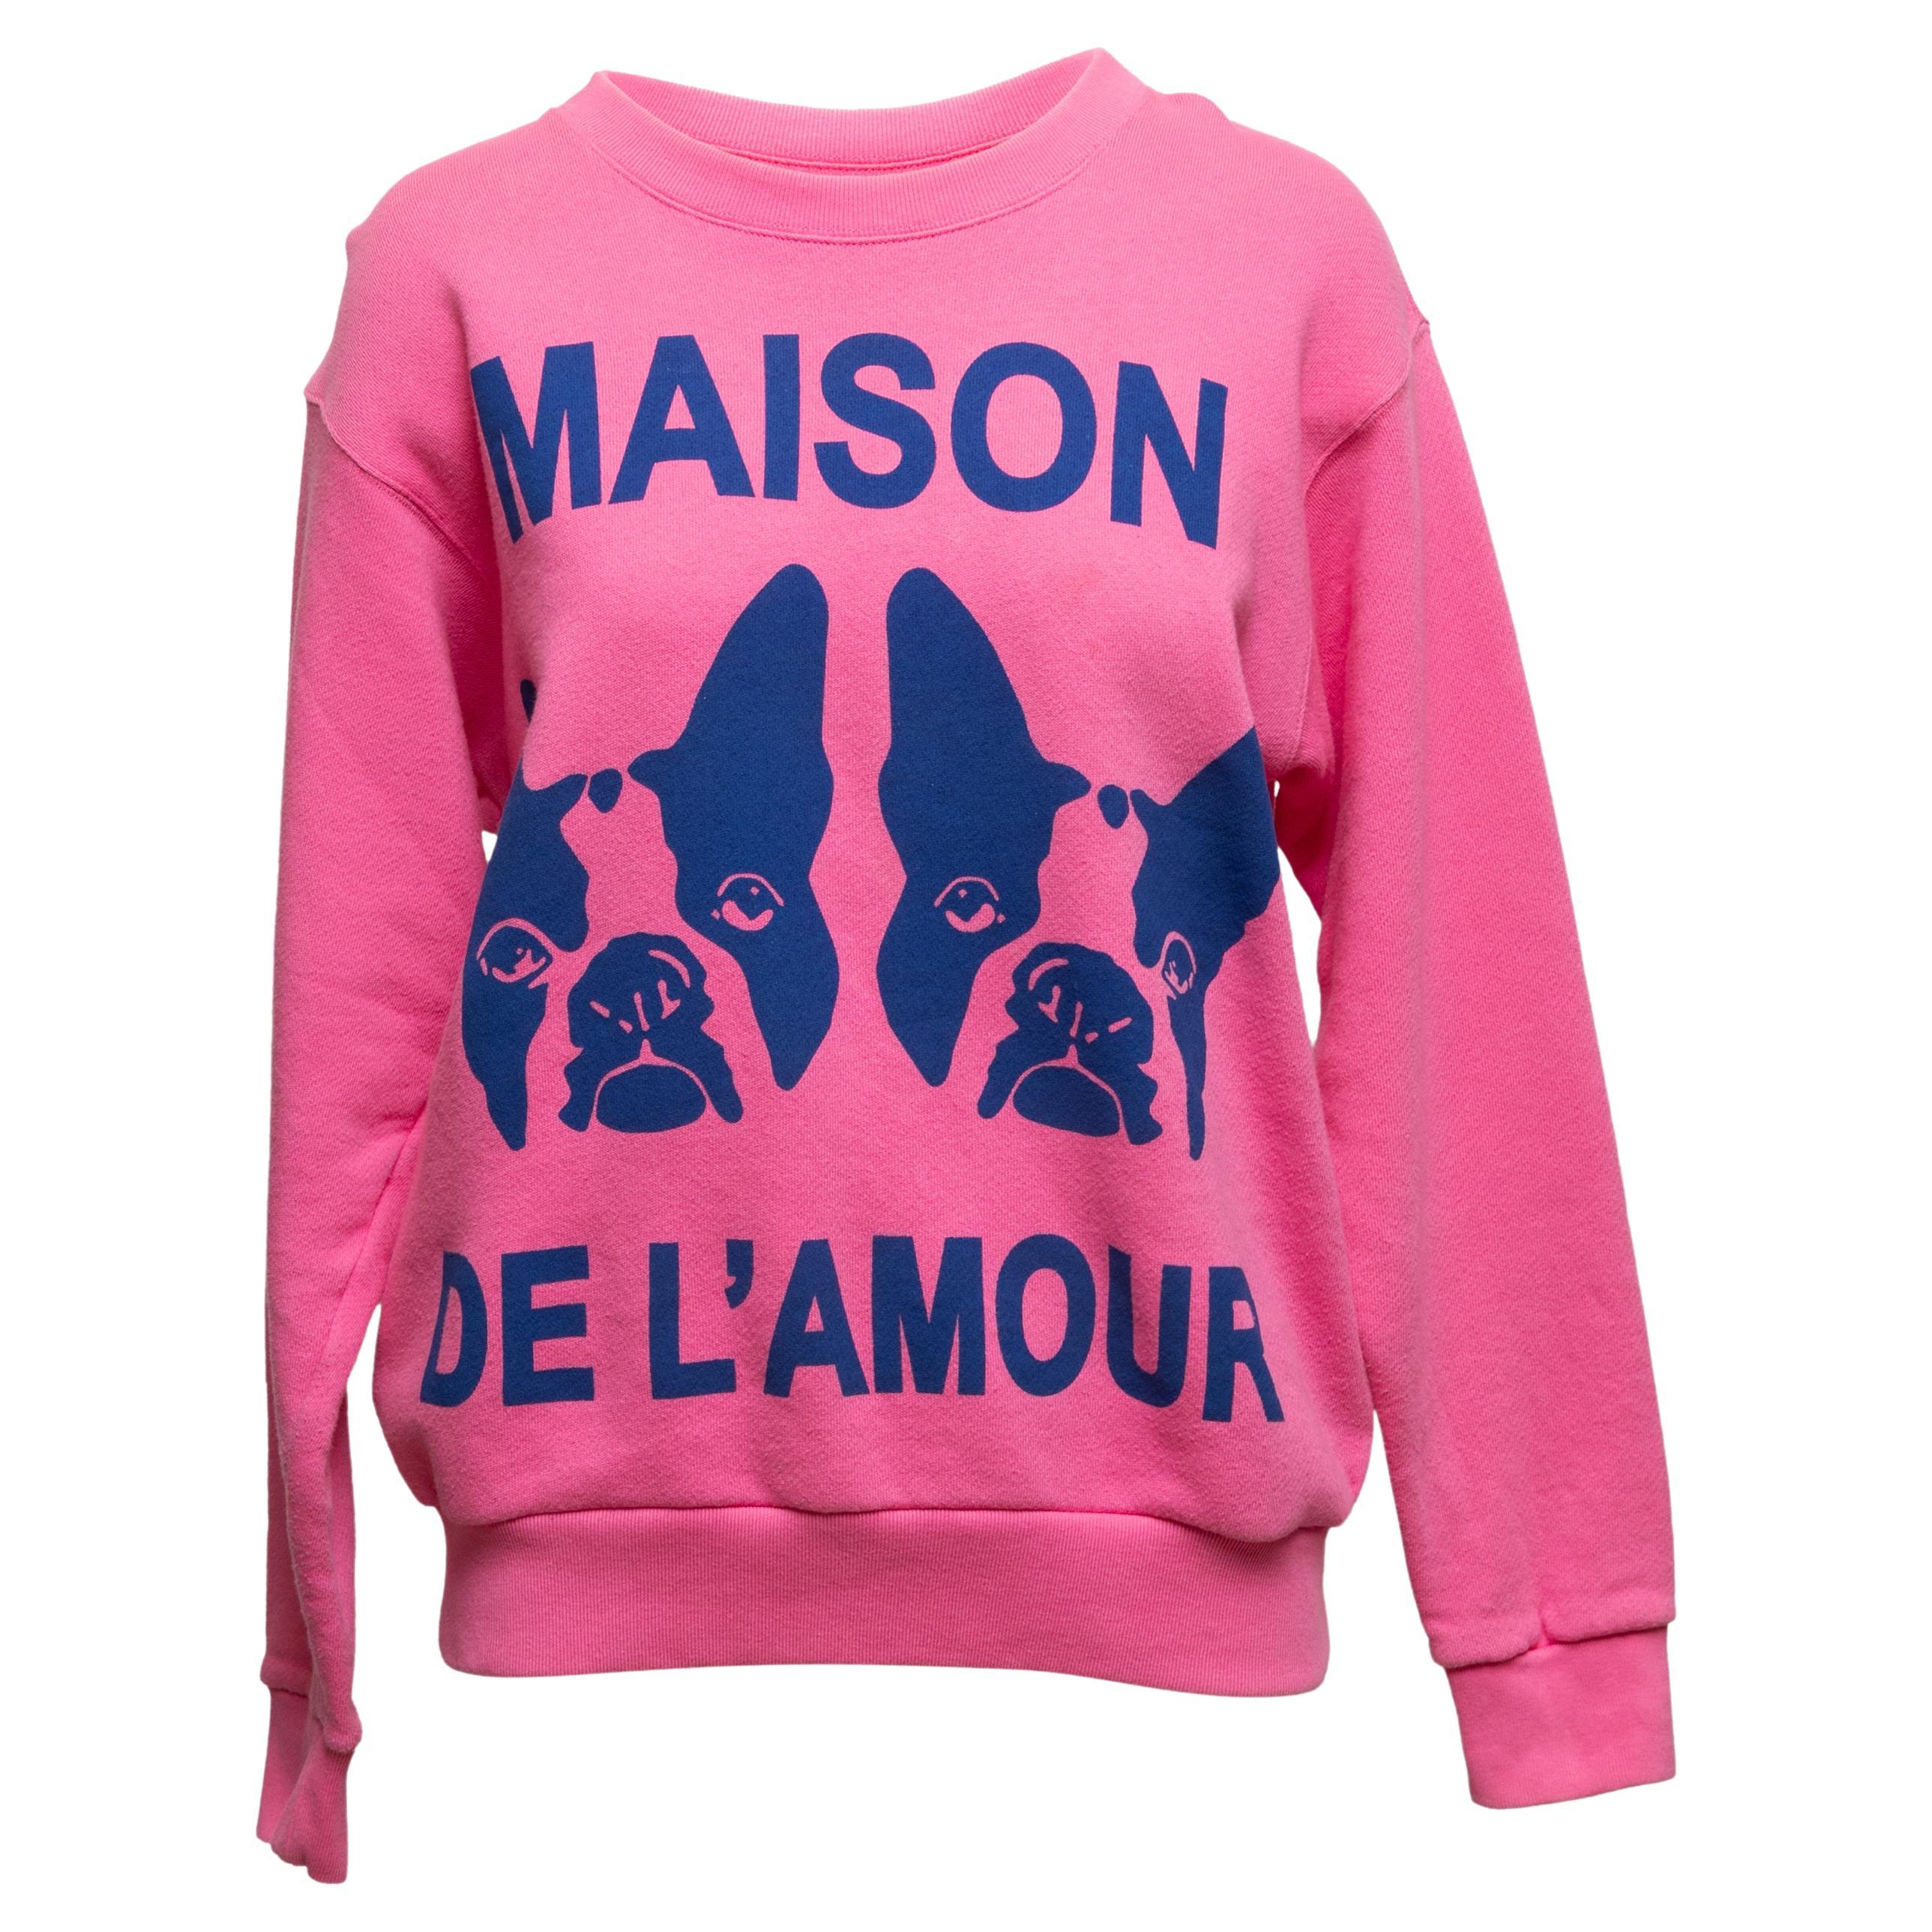 Gucci Maison De L'Amour - Sweat-shirt rose et marine, taille US XS